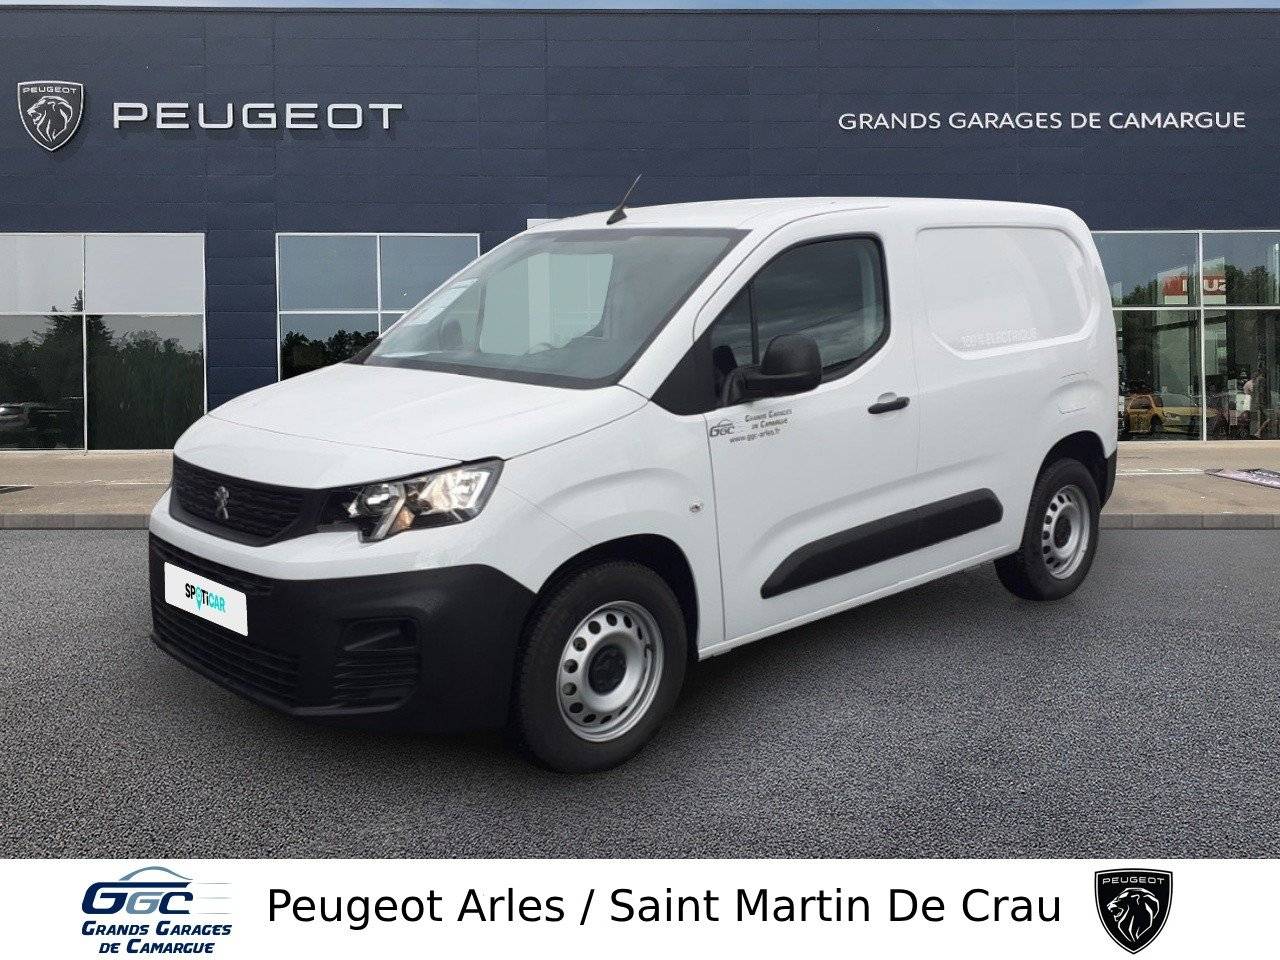 PEUGEOT PARTNER FGN | E-PARTNER FOURGON M 800 KG 136 CH BATTERIE 51 KWH occasion - Peugeot Arles